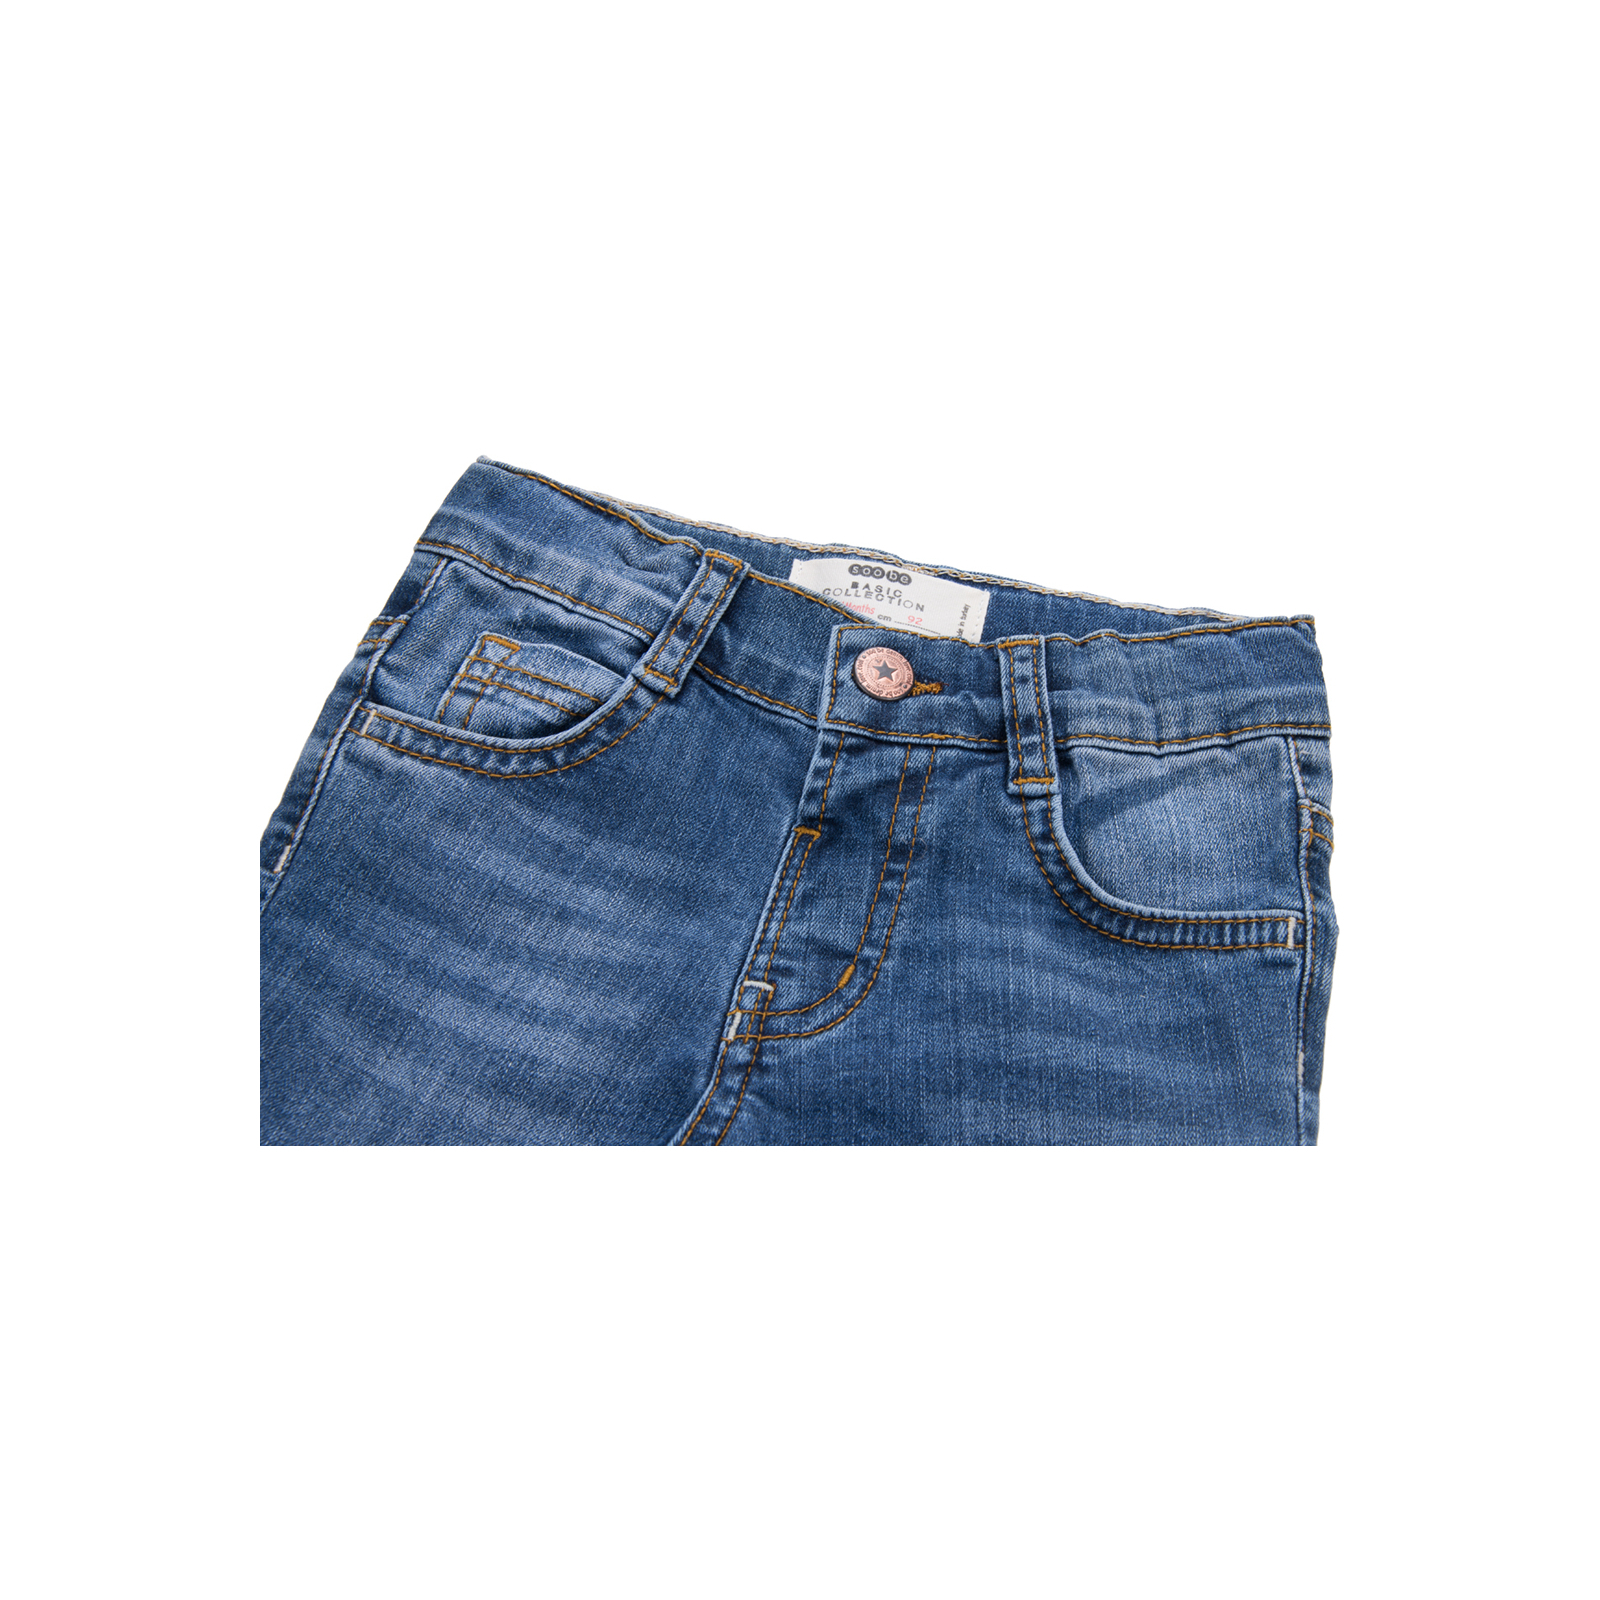 Джинсы Breeze синие (15YECPAN371-92B-jeans) изображение 3